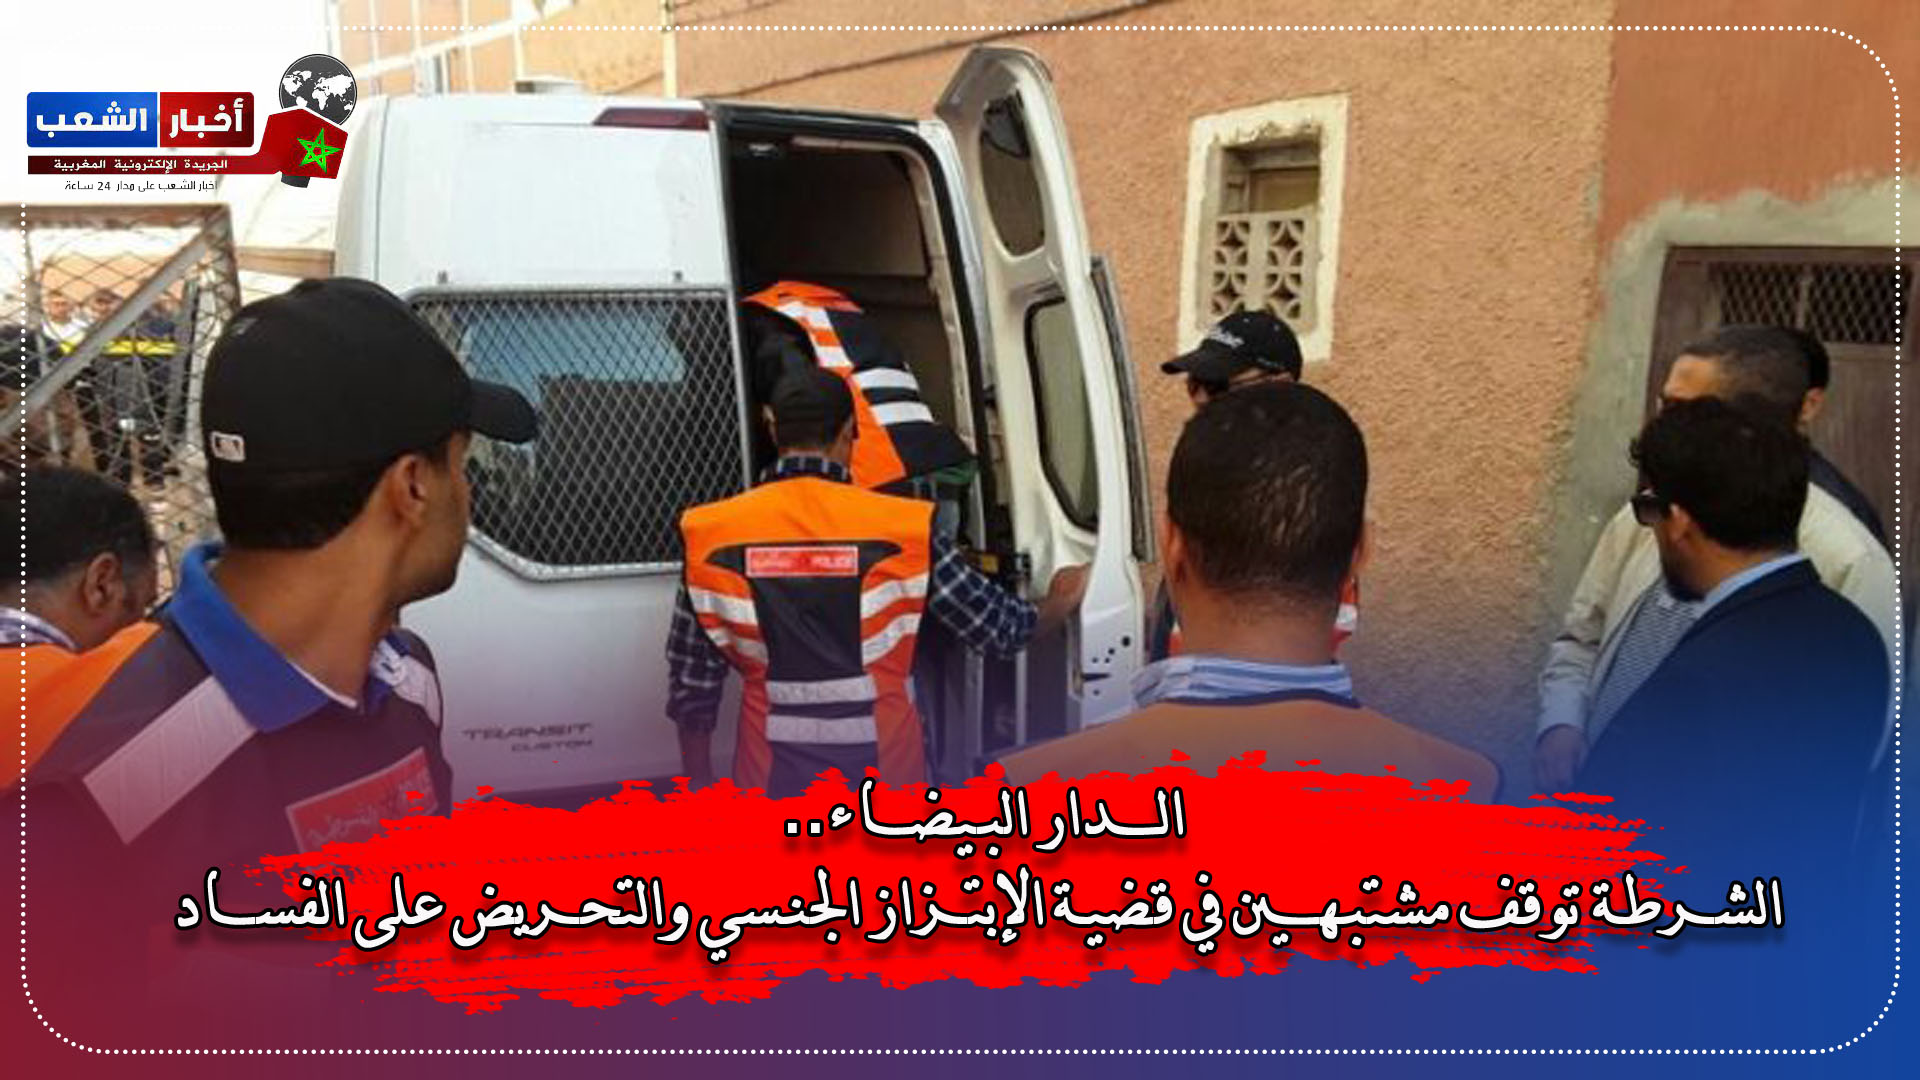 الدار البيضاء.. الشرطة توقف مشتبهين في قضية الإبتزاز الجنسي والتحريض على الفساد